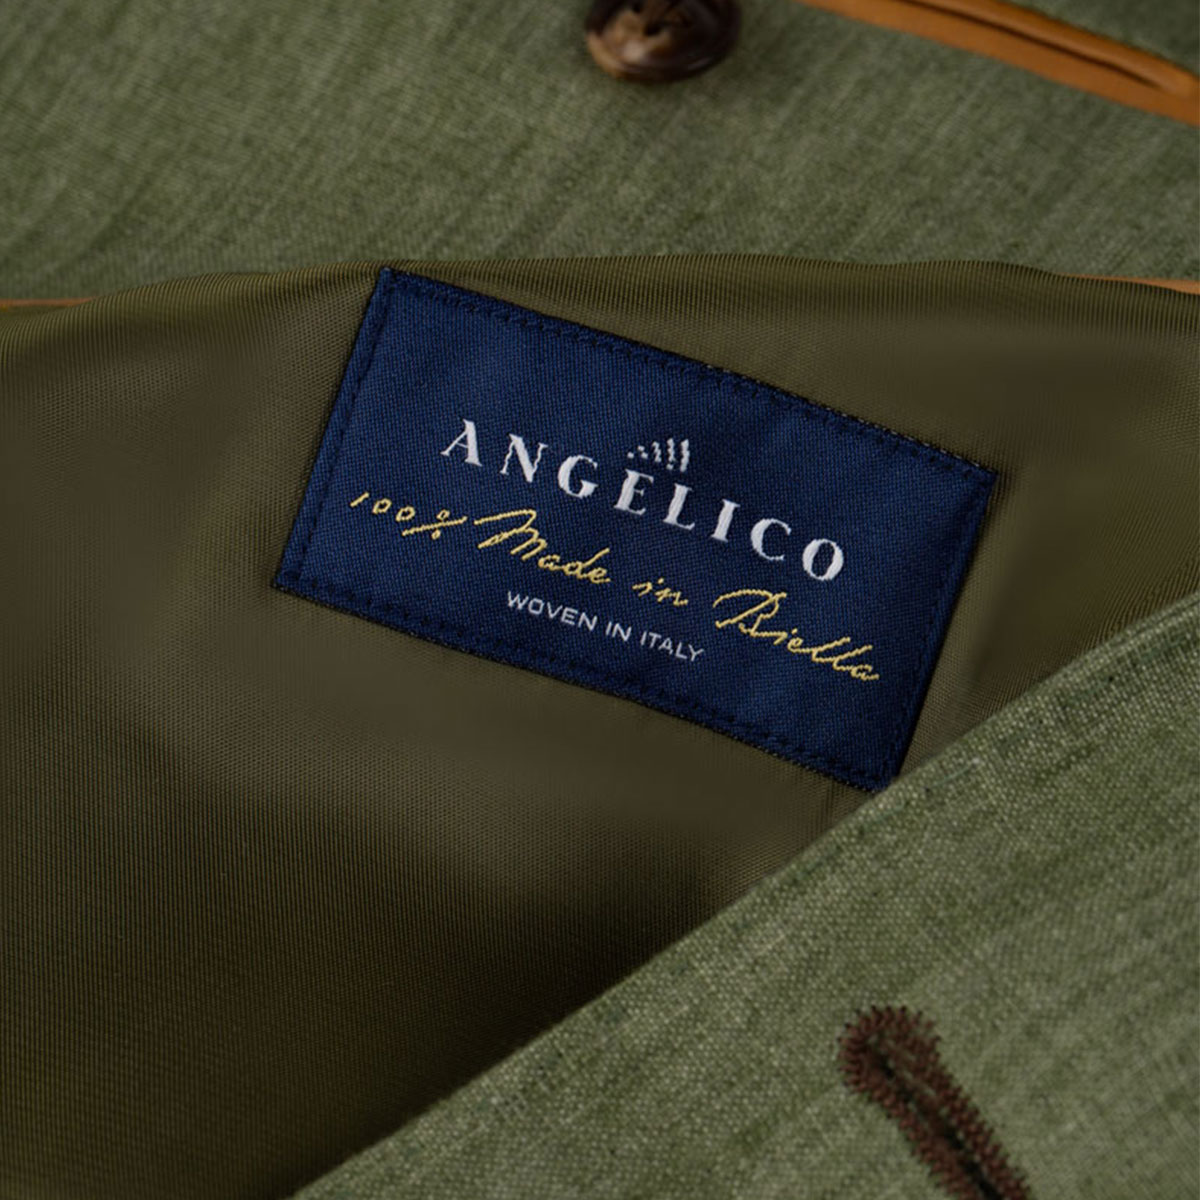 Hochwertiges Leinengewebe von Angelico in Italien